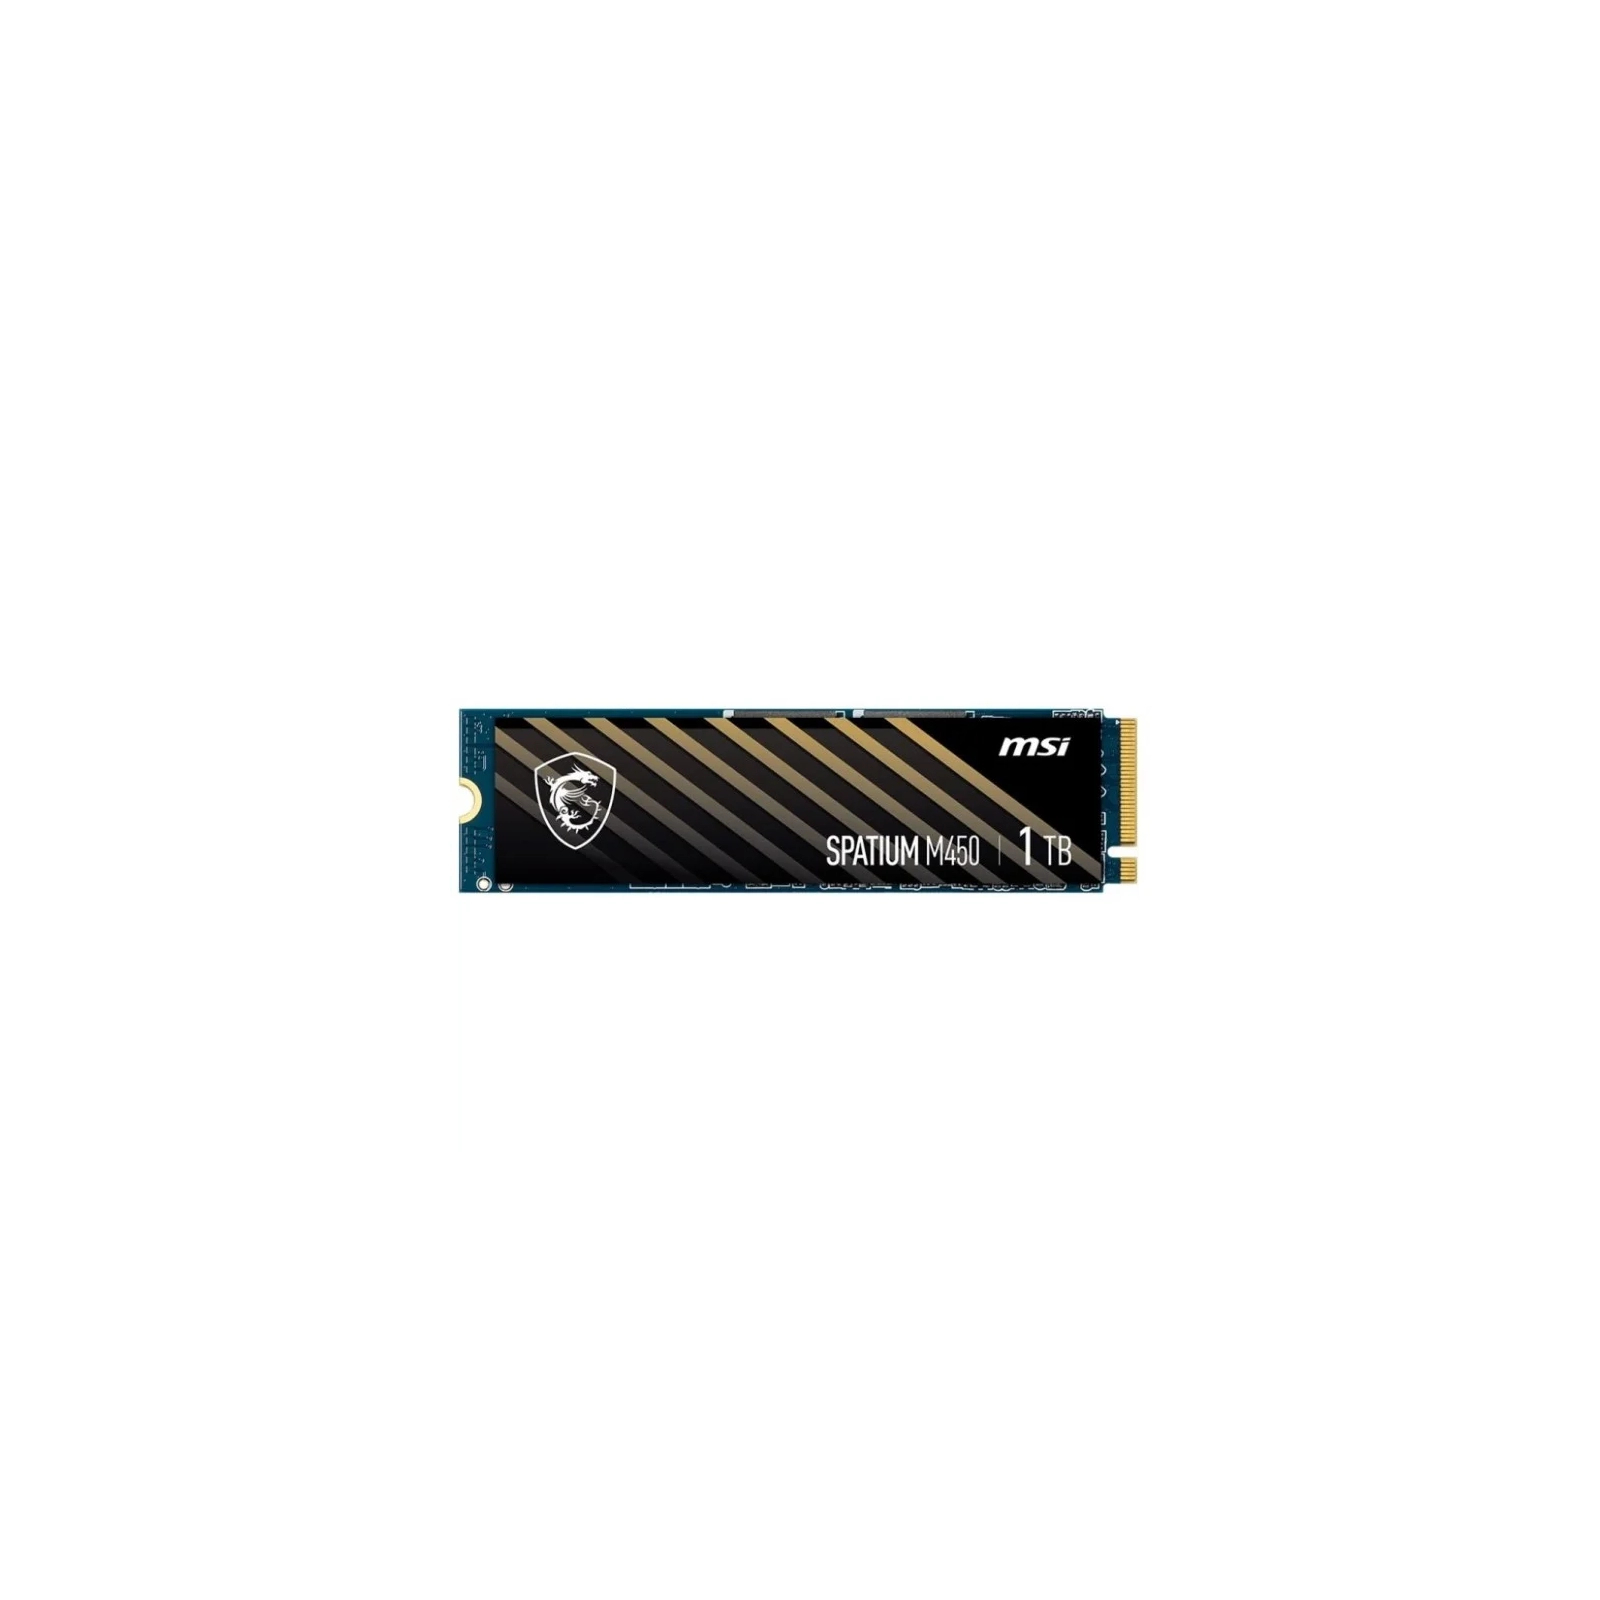 Накопитель SSD MSI M.2 2280 500GB SPATIUM M450 (S78-440K190-P83)